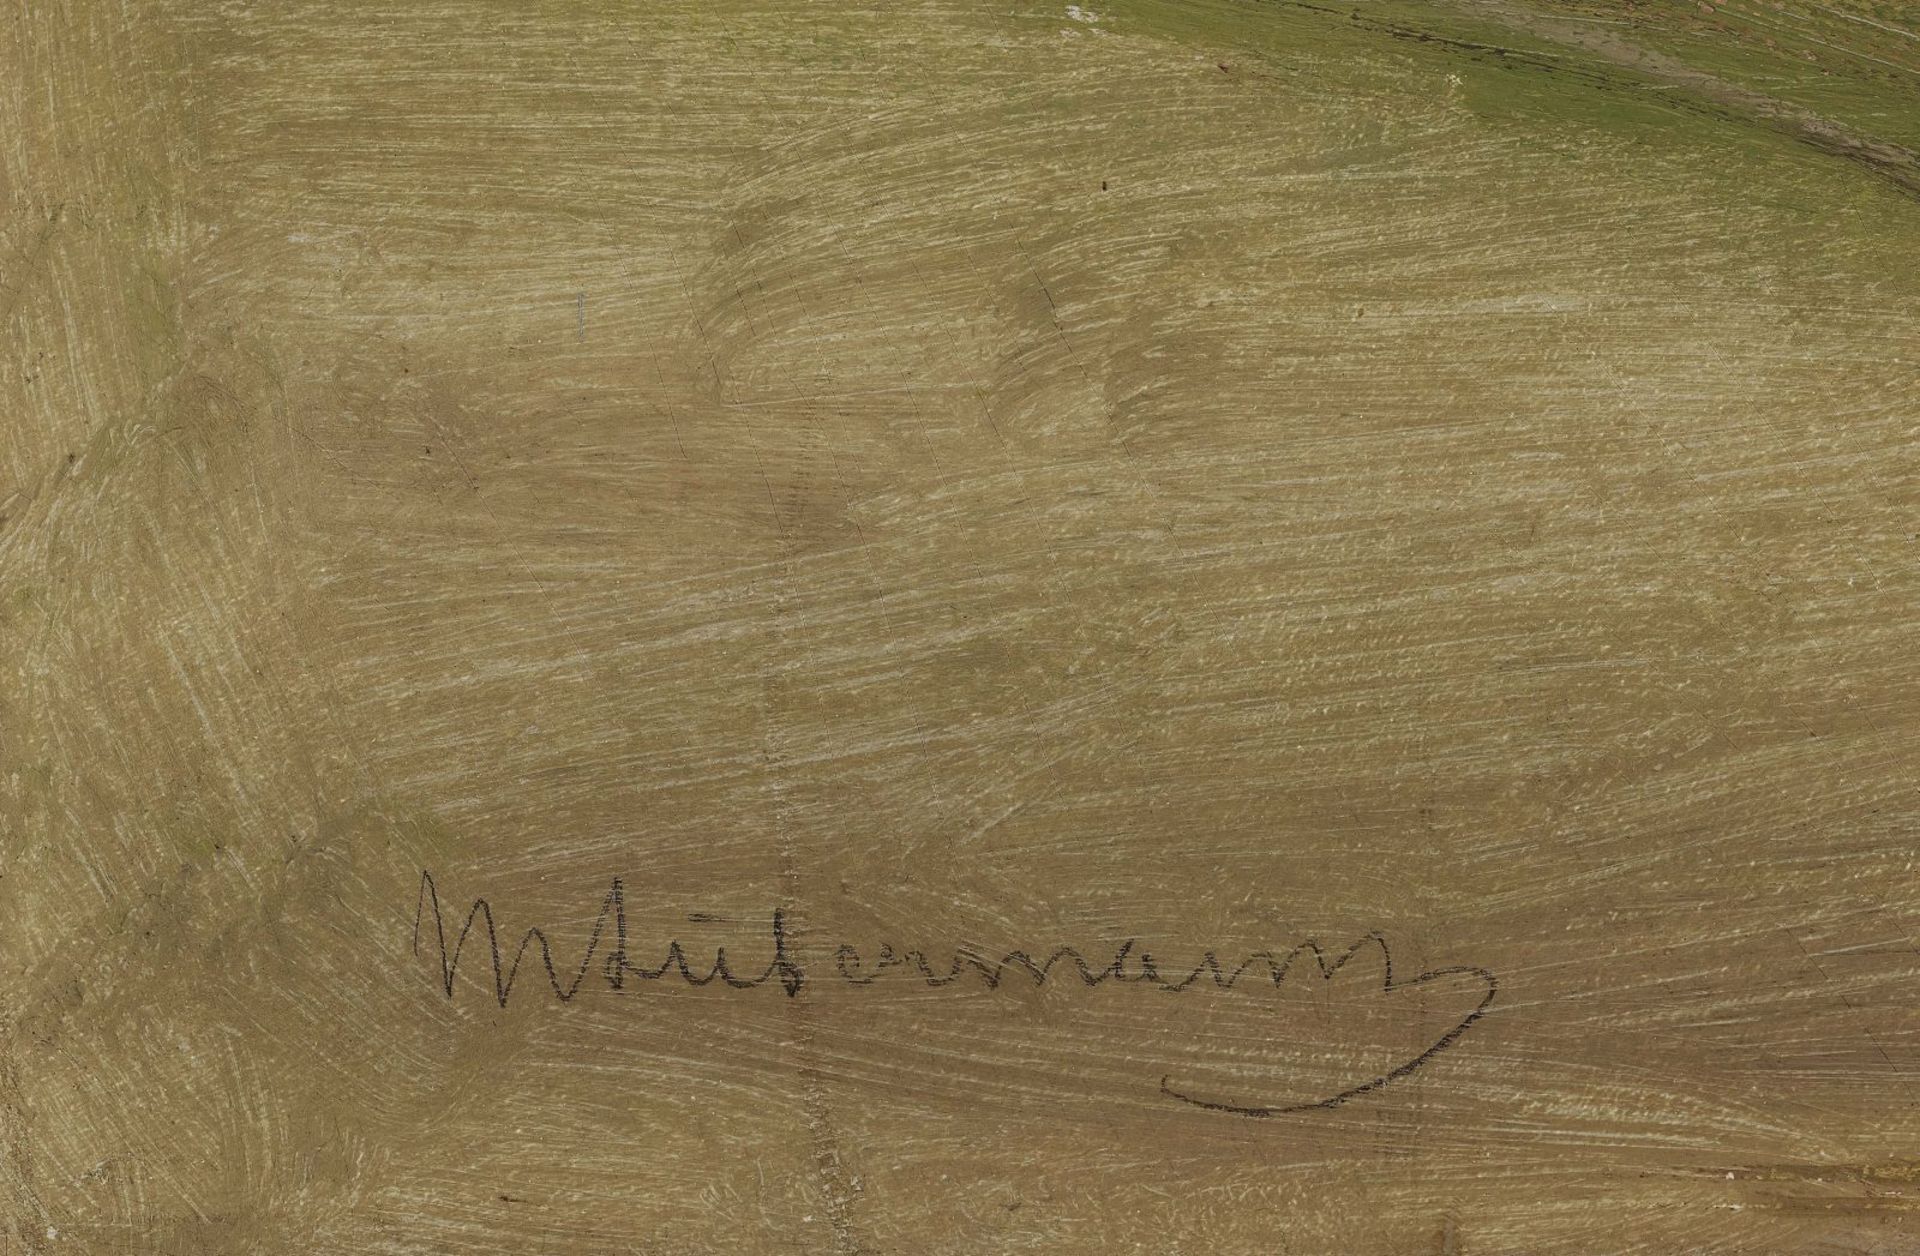 Max Liebermann - Bild 5 aus 5